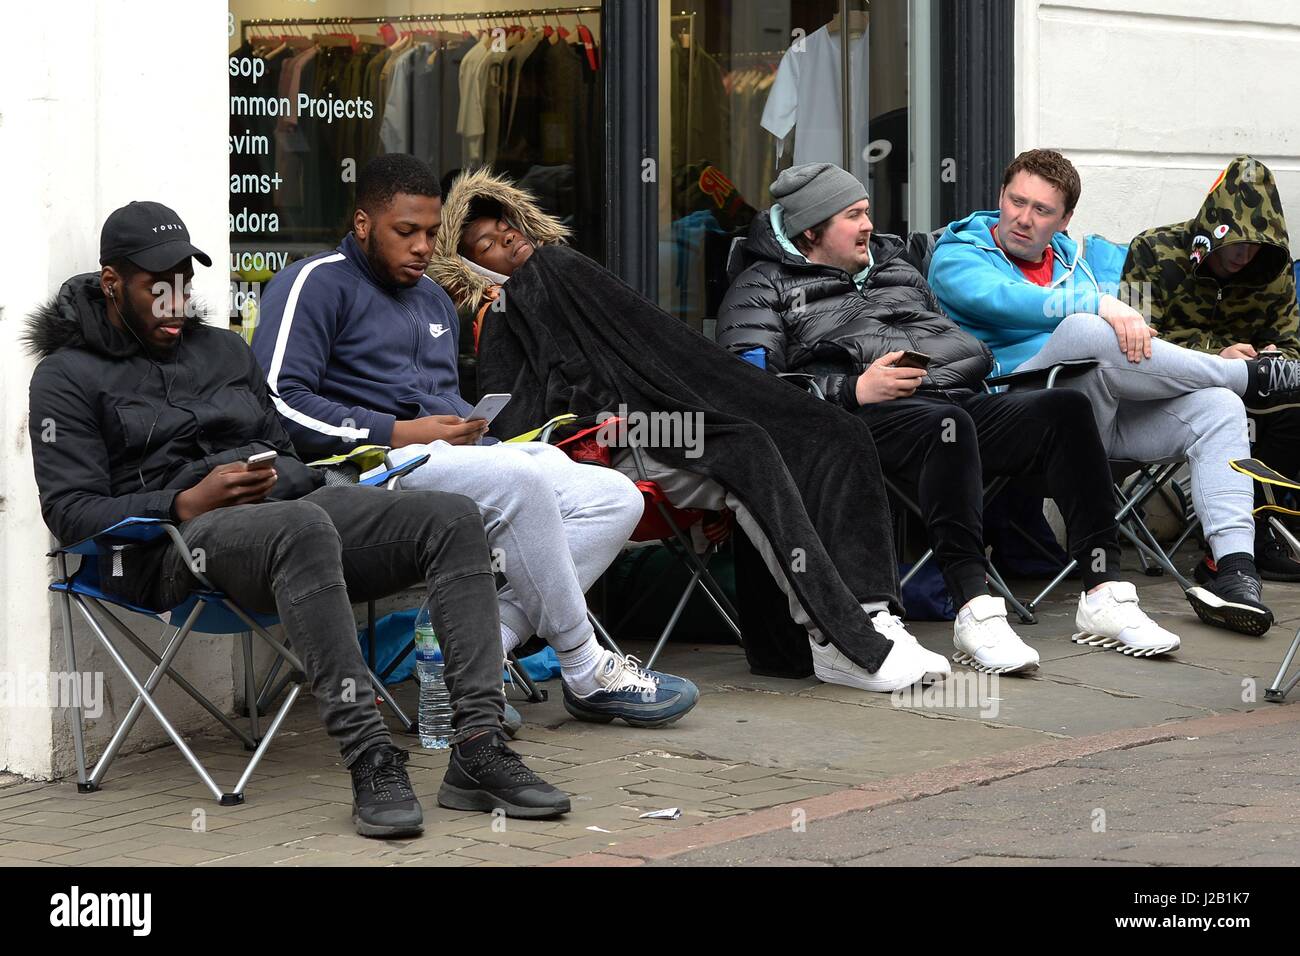 Fans camp außerhalb Mode Händler 18montrose in Nottingham für die Adidas  Yeezy Boost 350 V2-Trainer, die neuesten Schuhe von amerikanischen  freigegeben werden rap-star Kanye West und Adidas, die am Samstag in den